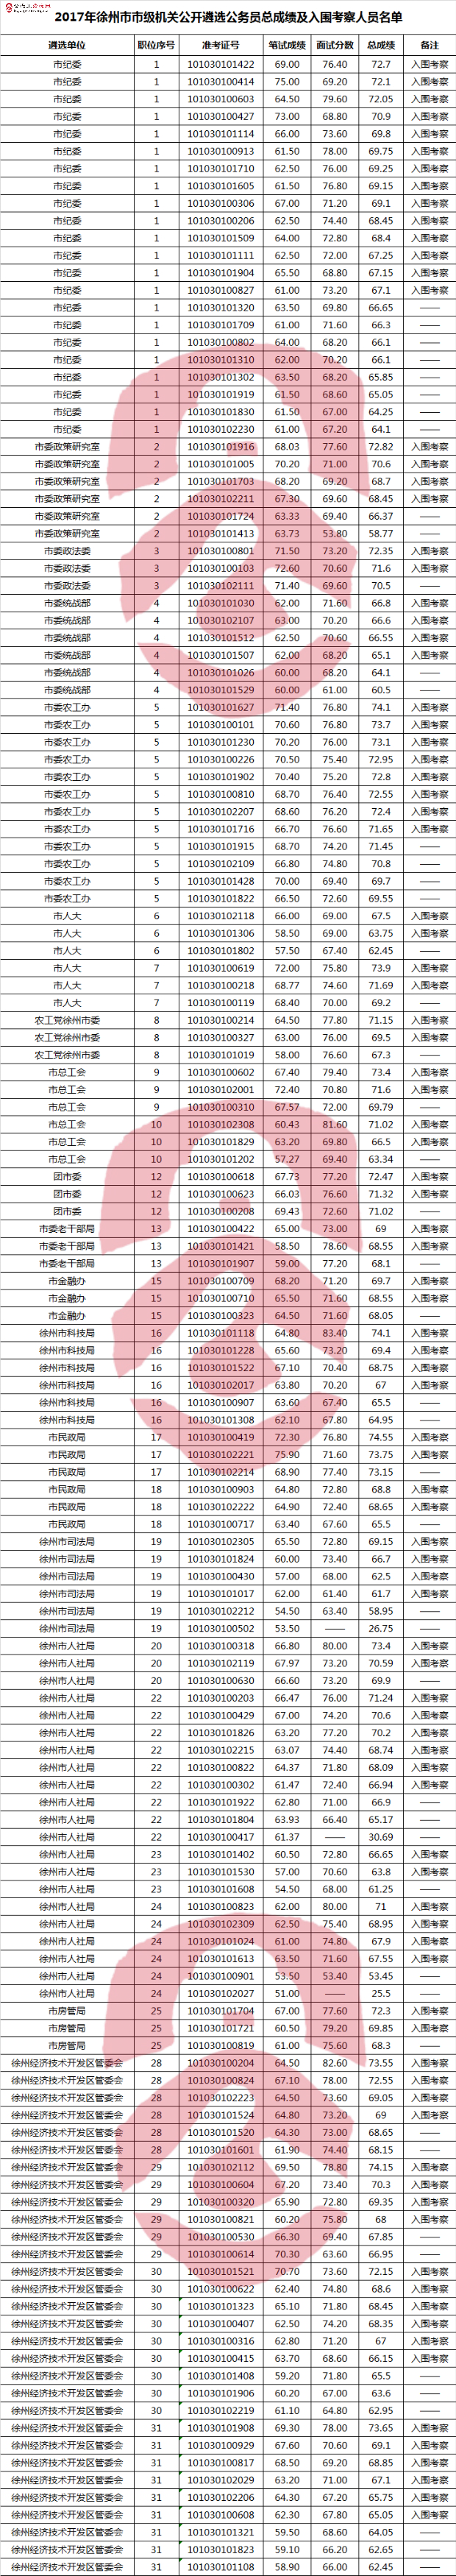 2017年徐州市市级机关公开遴选公务员总成绩及入围考察人员名单.jpg